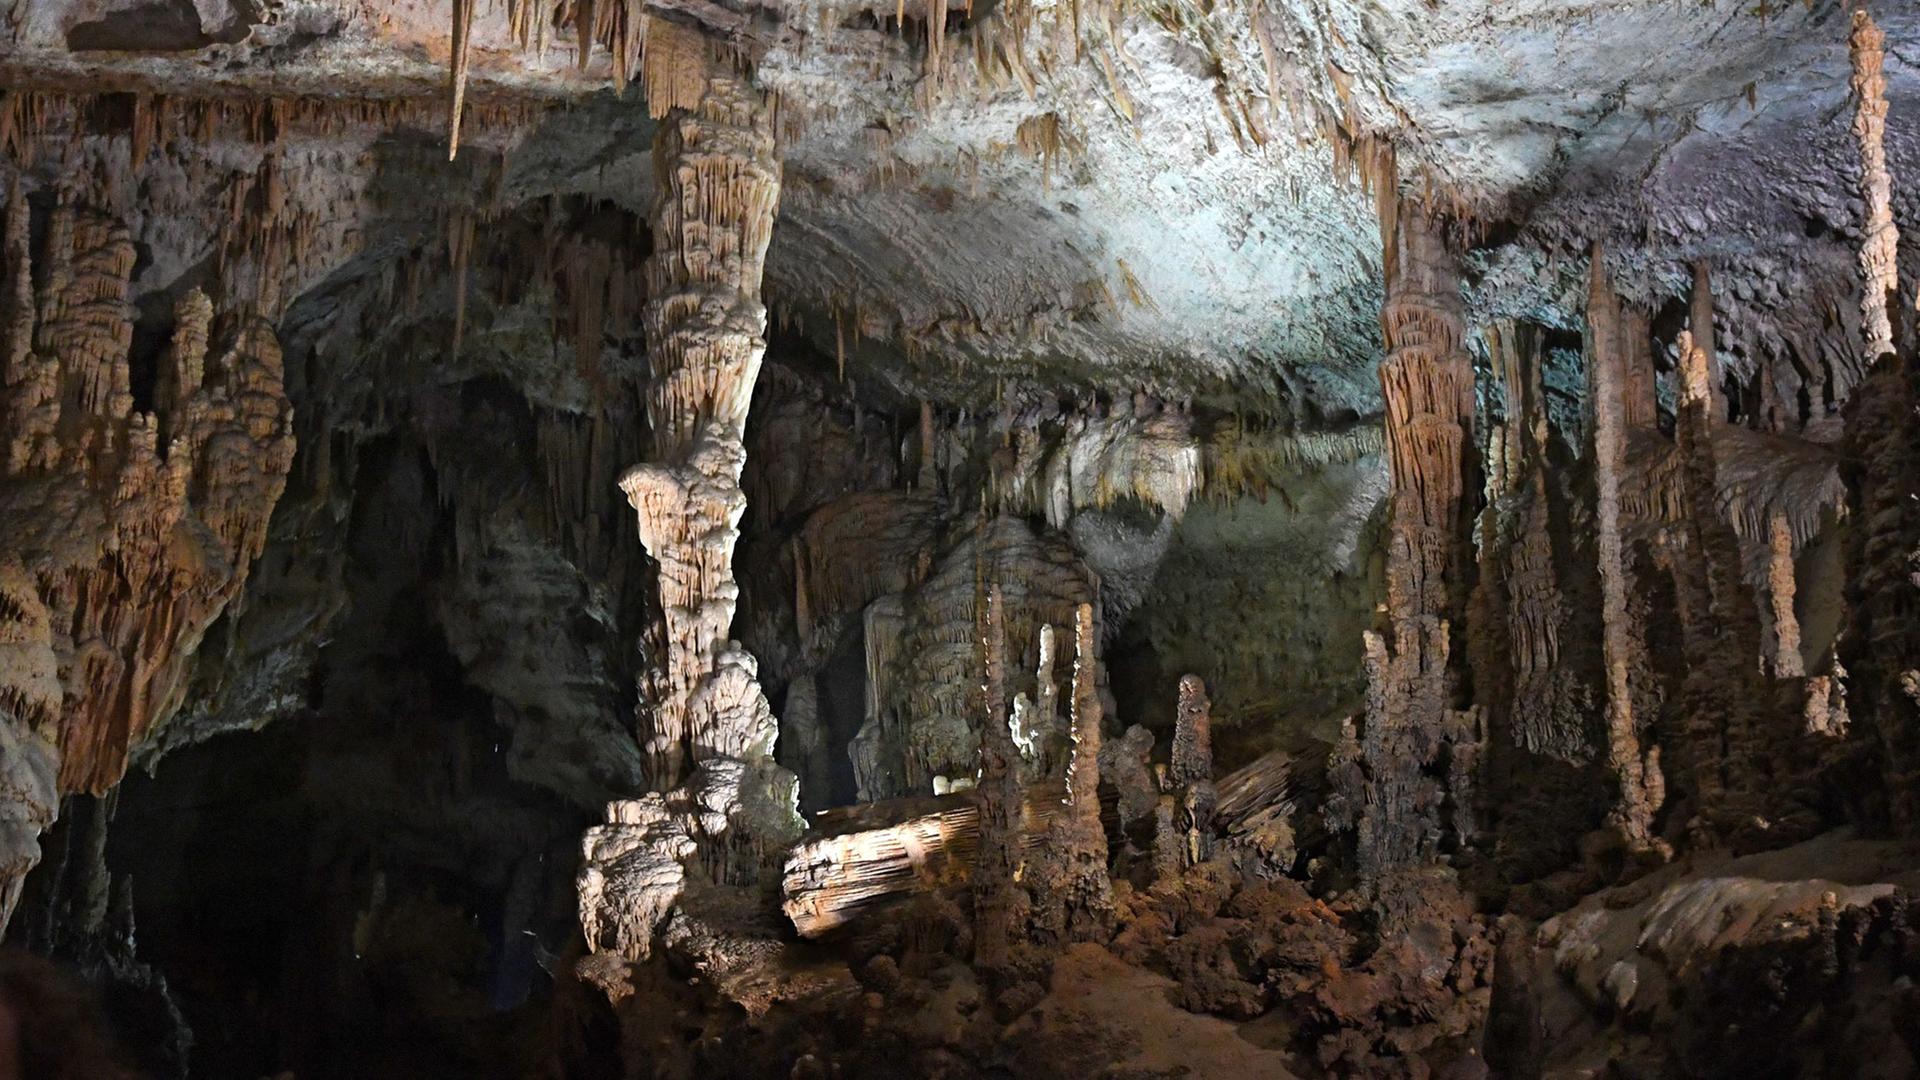 Jeita-Grotte im Libanon-Gebirge, nördlich von Beirut.